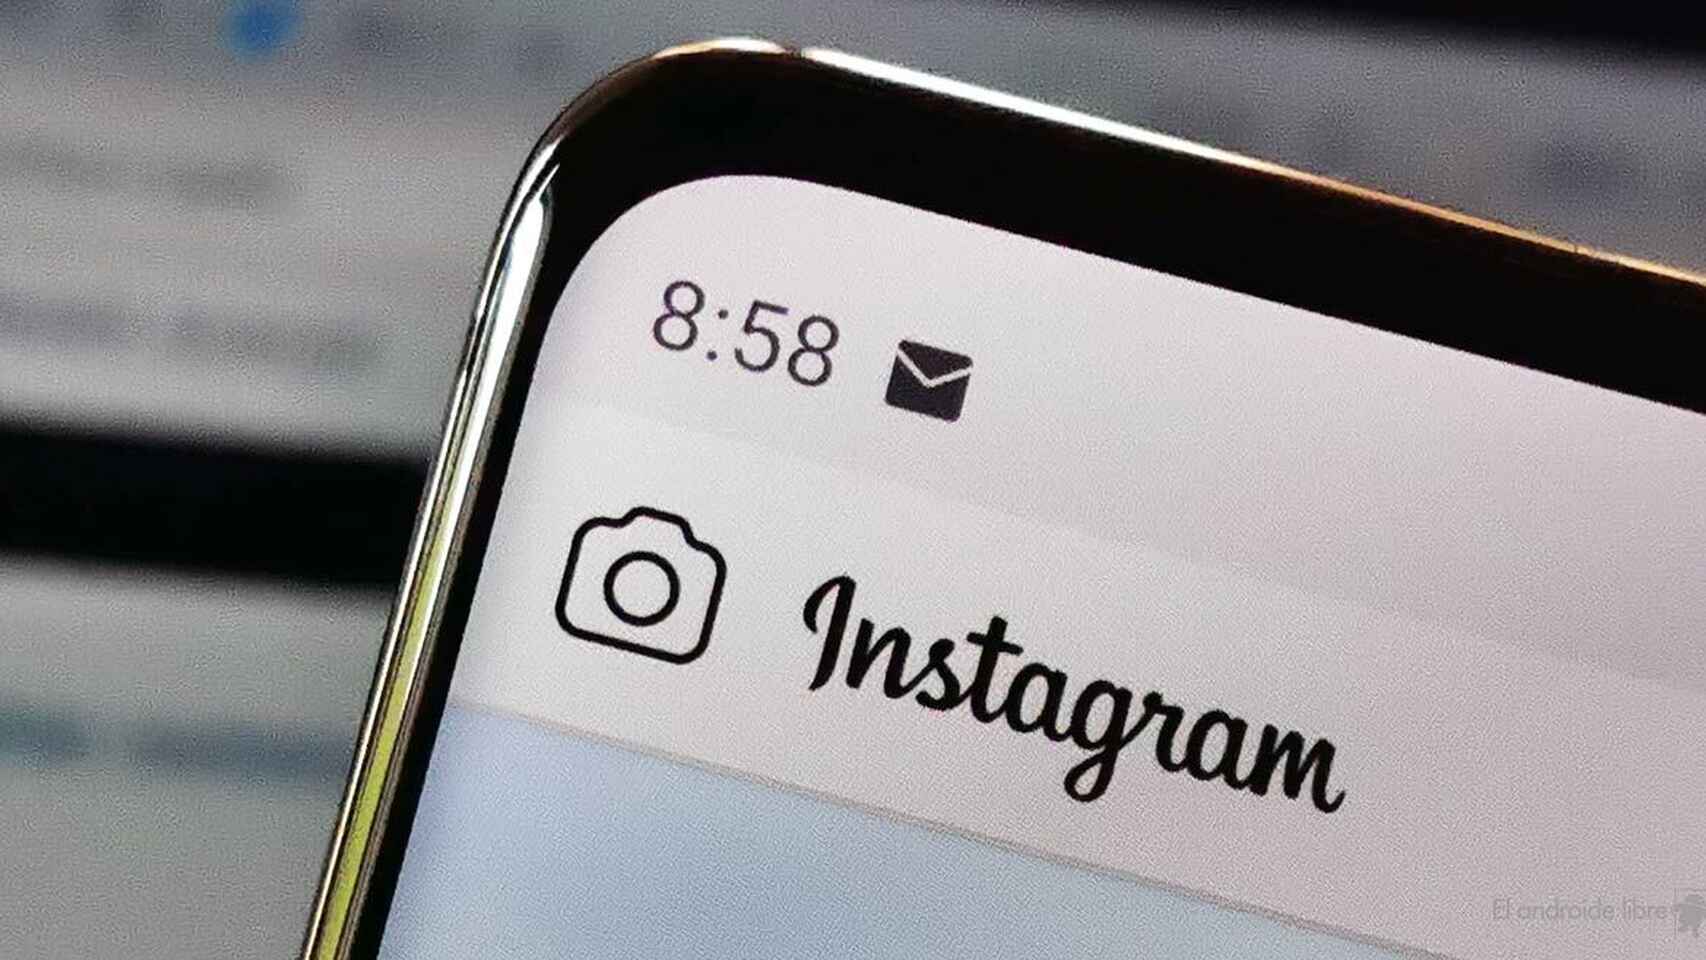 Instagram con mensajes cifrados